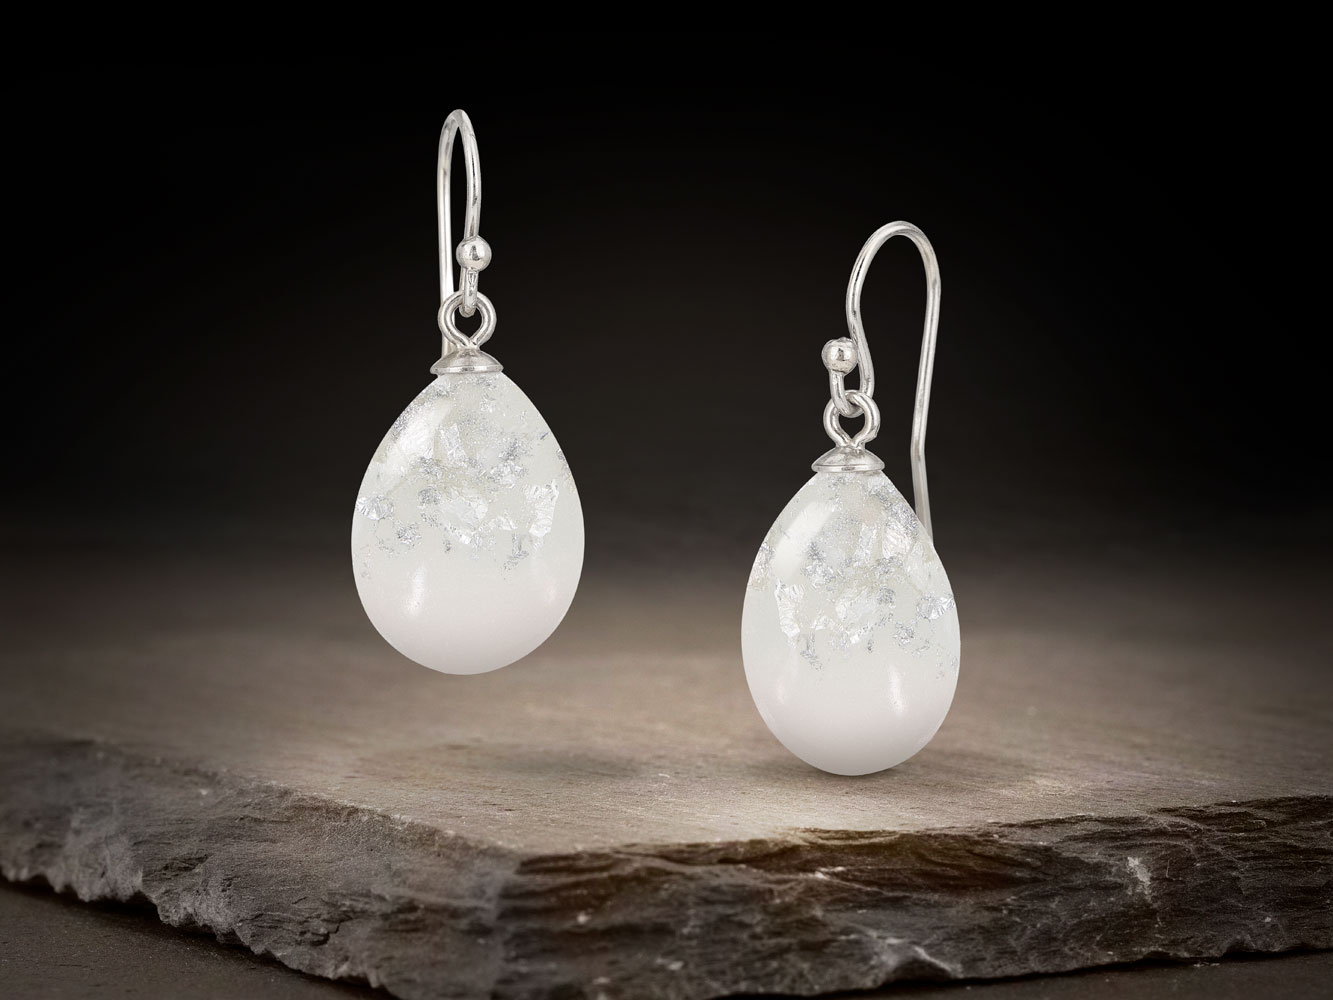 breastmilk jewelry drop or teardrop shaped hooks earrings KeepsakeMom with silver flakes and silver hooks